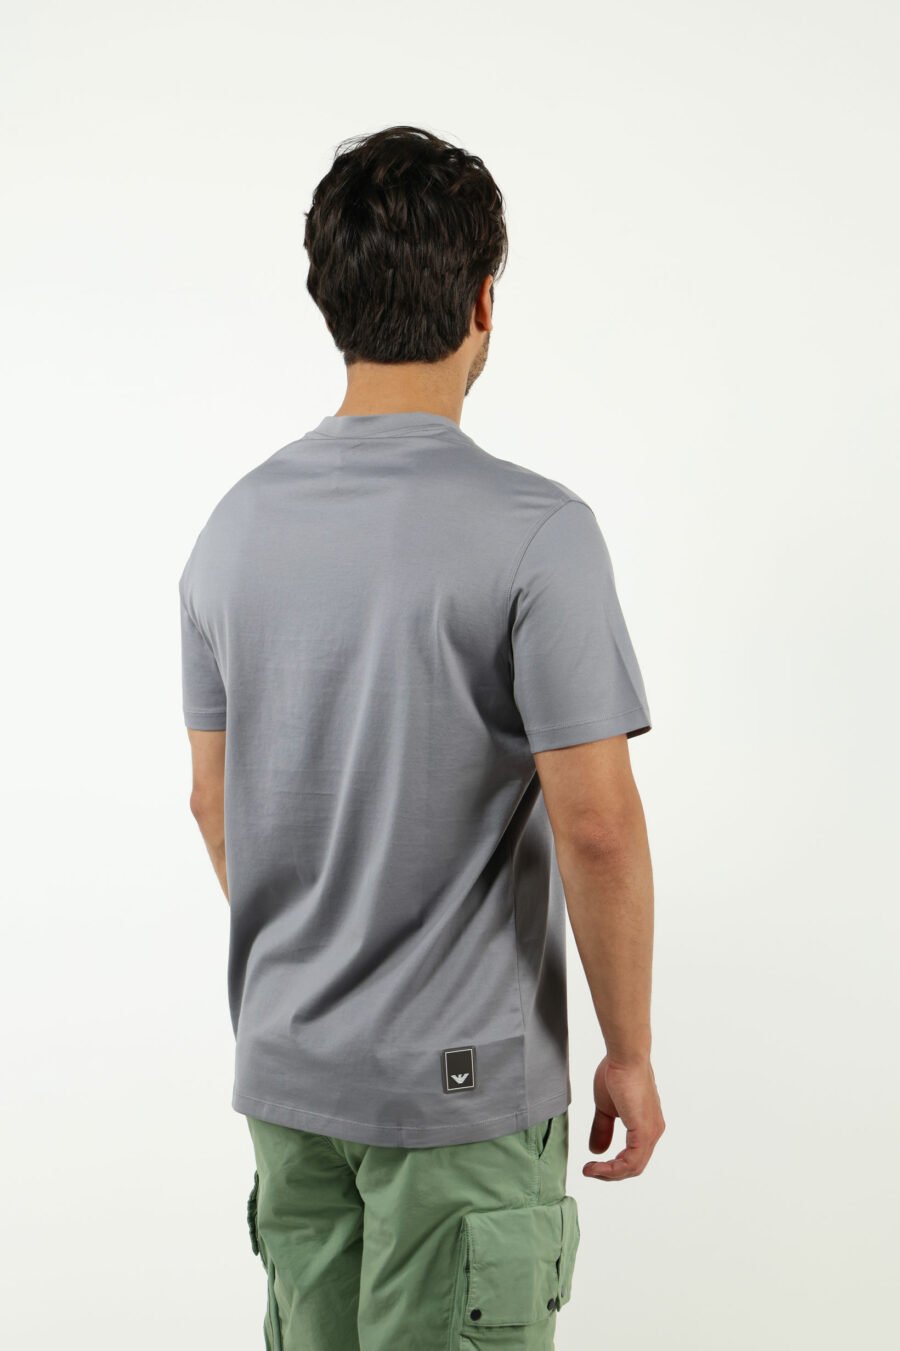 Camiseta gris con minilogo águila - number13515